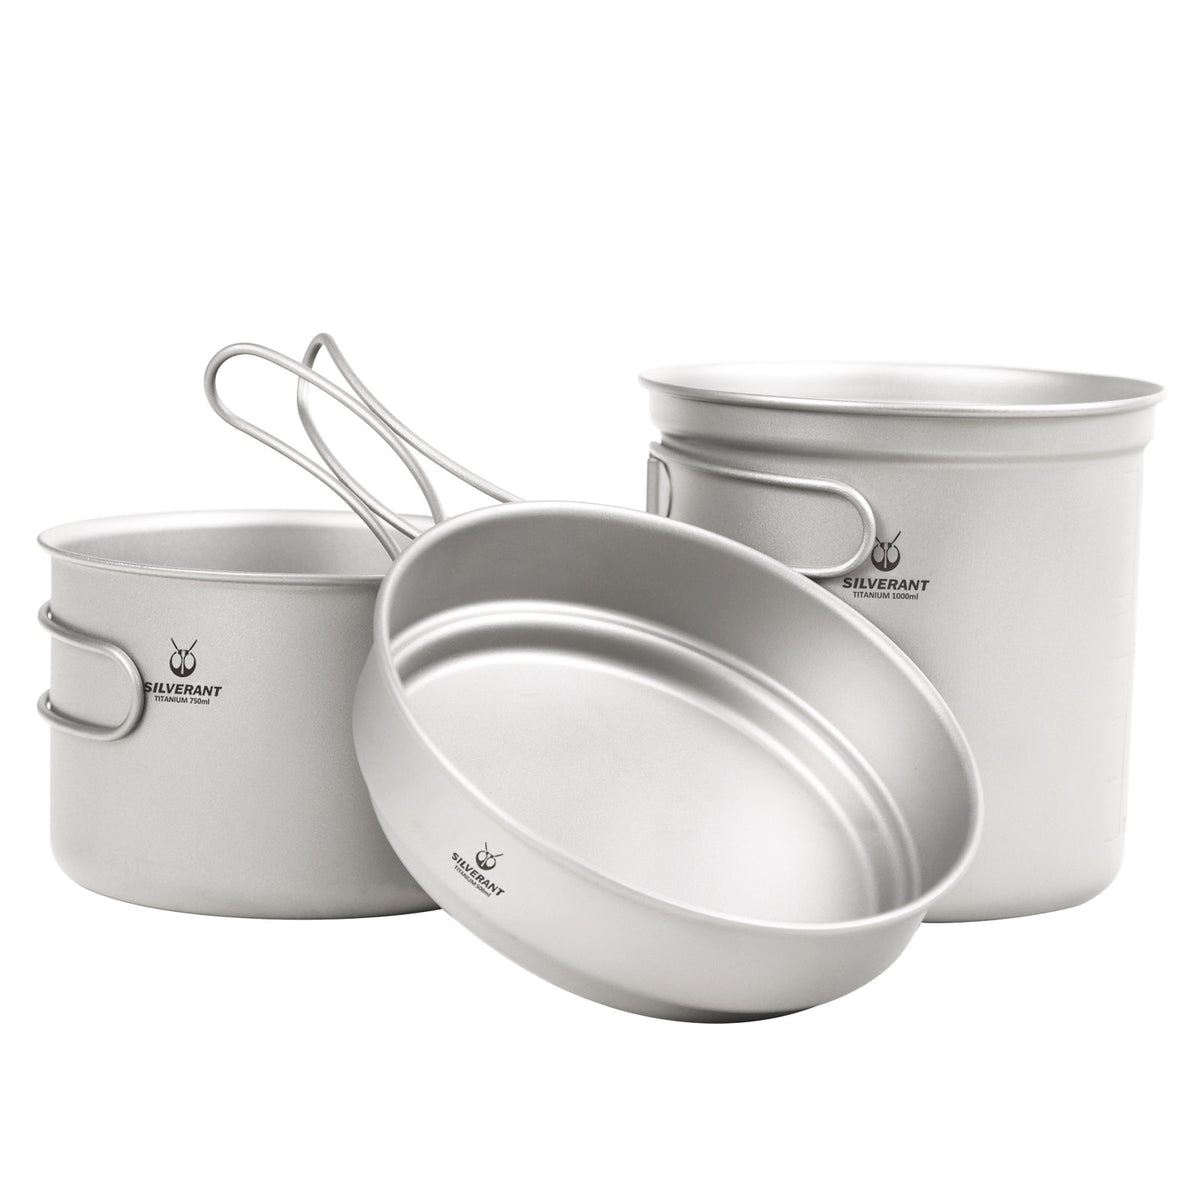 SilverAnt Ultralight Titanium Cookware Set - 2-Piece Titanium Pot & Titanium Pan - Camping Backpacking Pot & Pan Cook Ware Nesting Foldable Handles